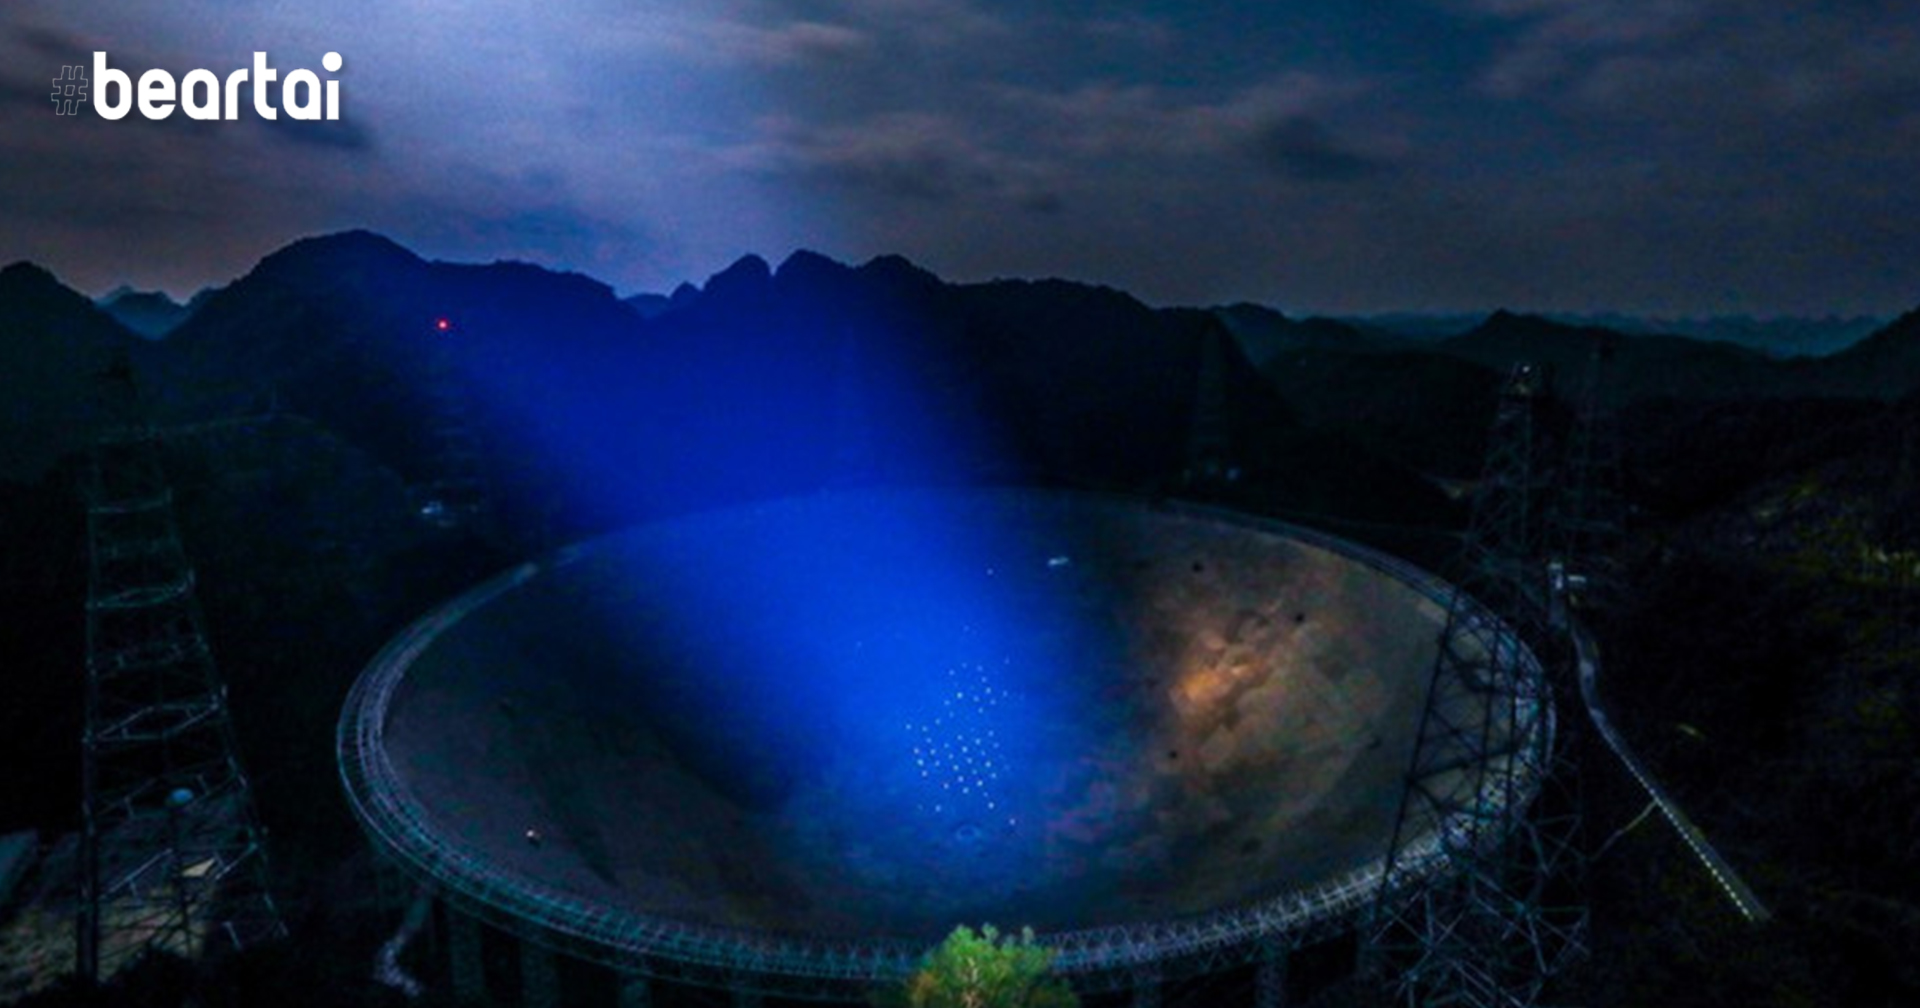 1 เม.ย.นี้ดีเดย์ จีนเปิดให้ทั่วโลกใช้ ‘กล้องโทรทรรศน์วิทยุใหญ่ที่สุดในโลก’